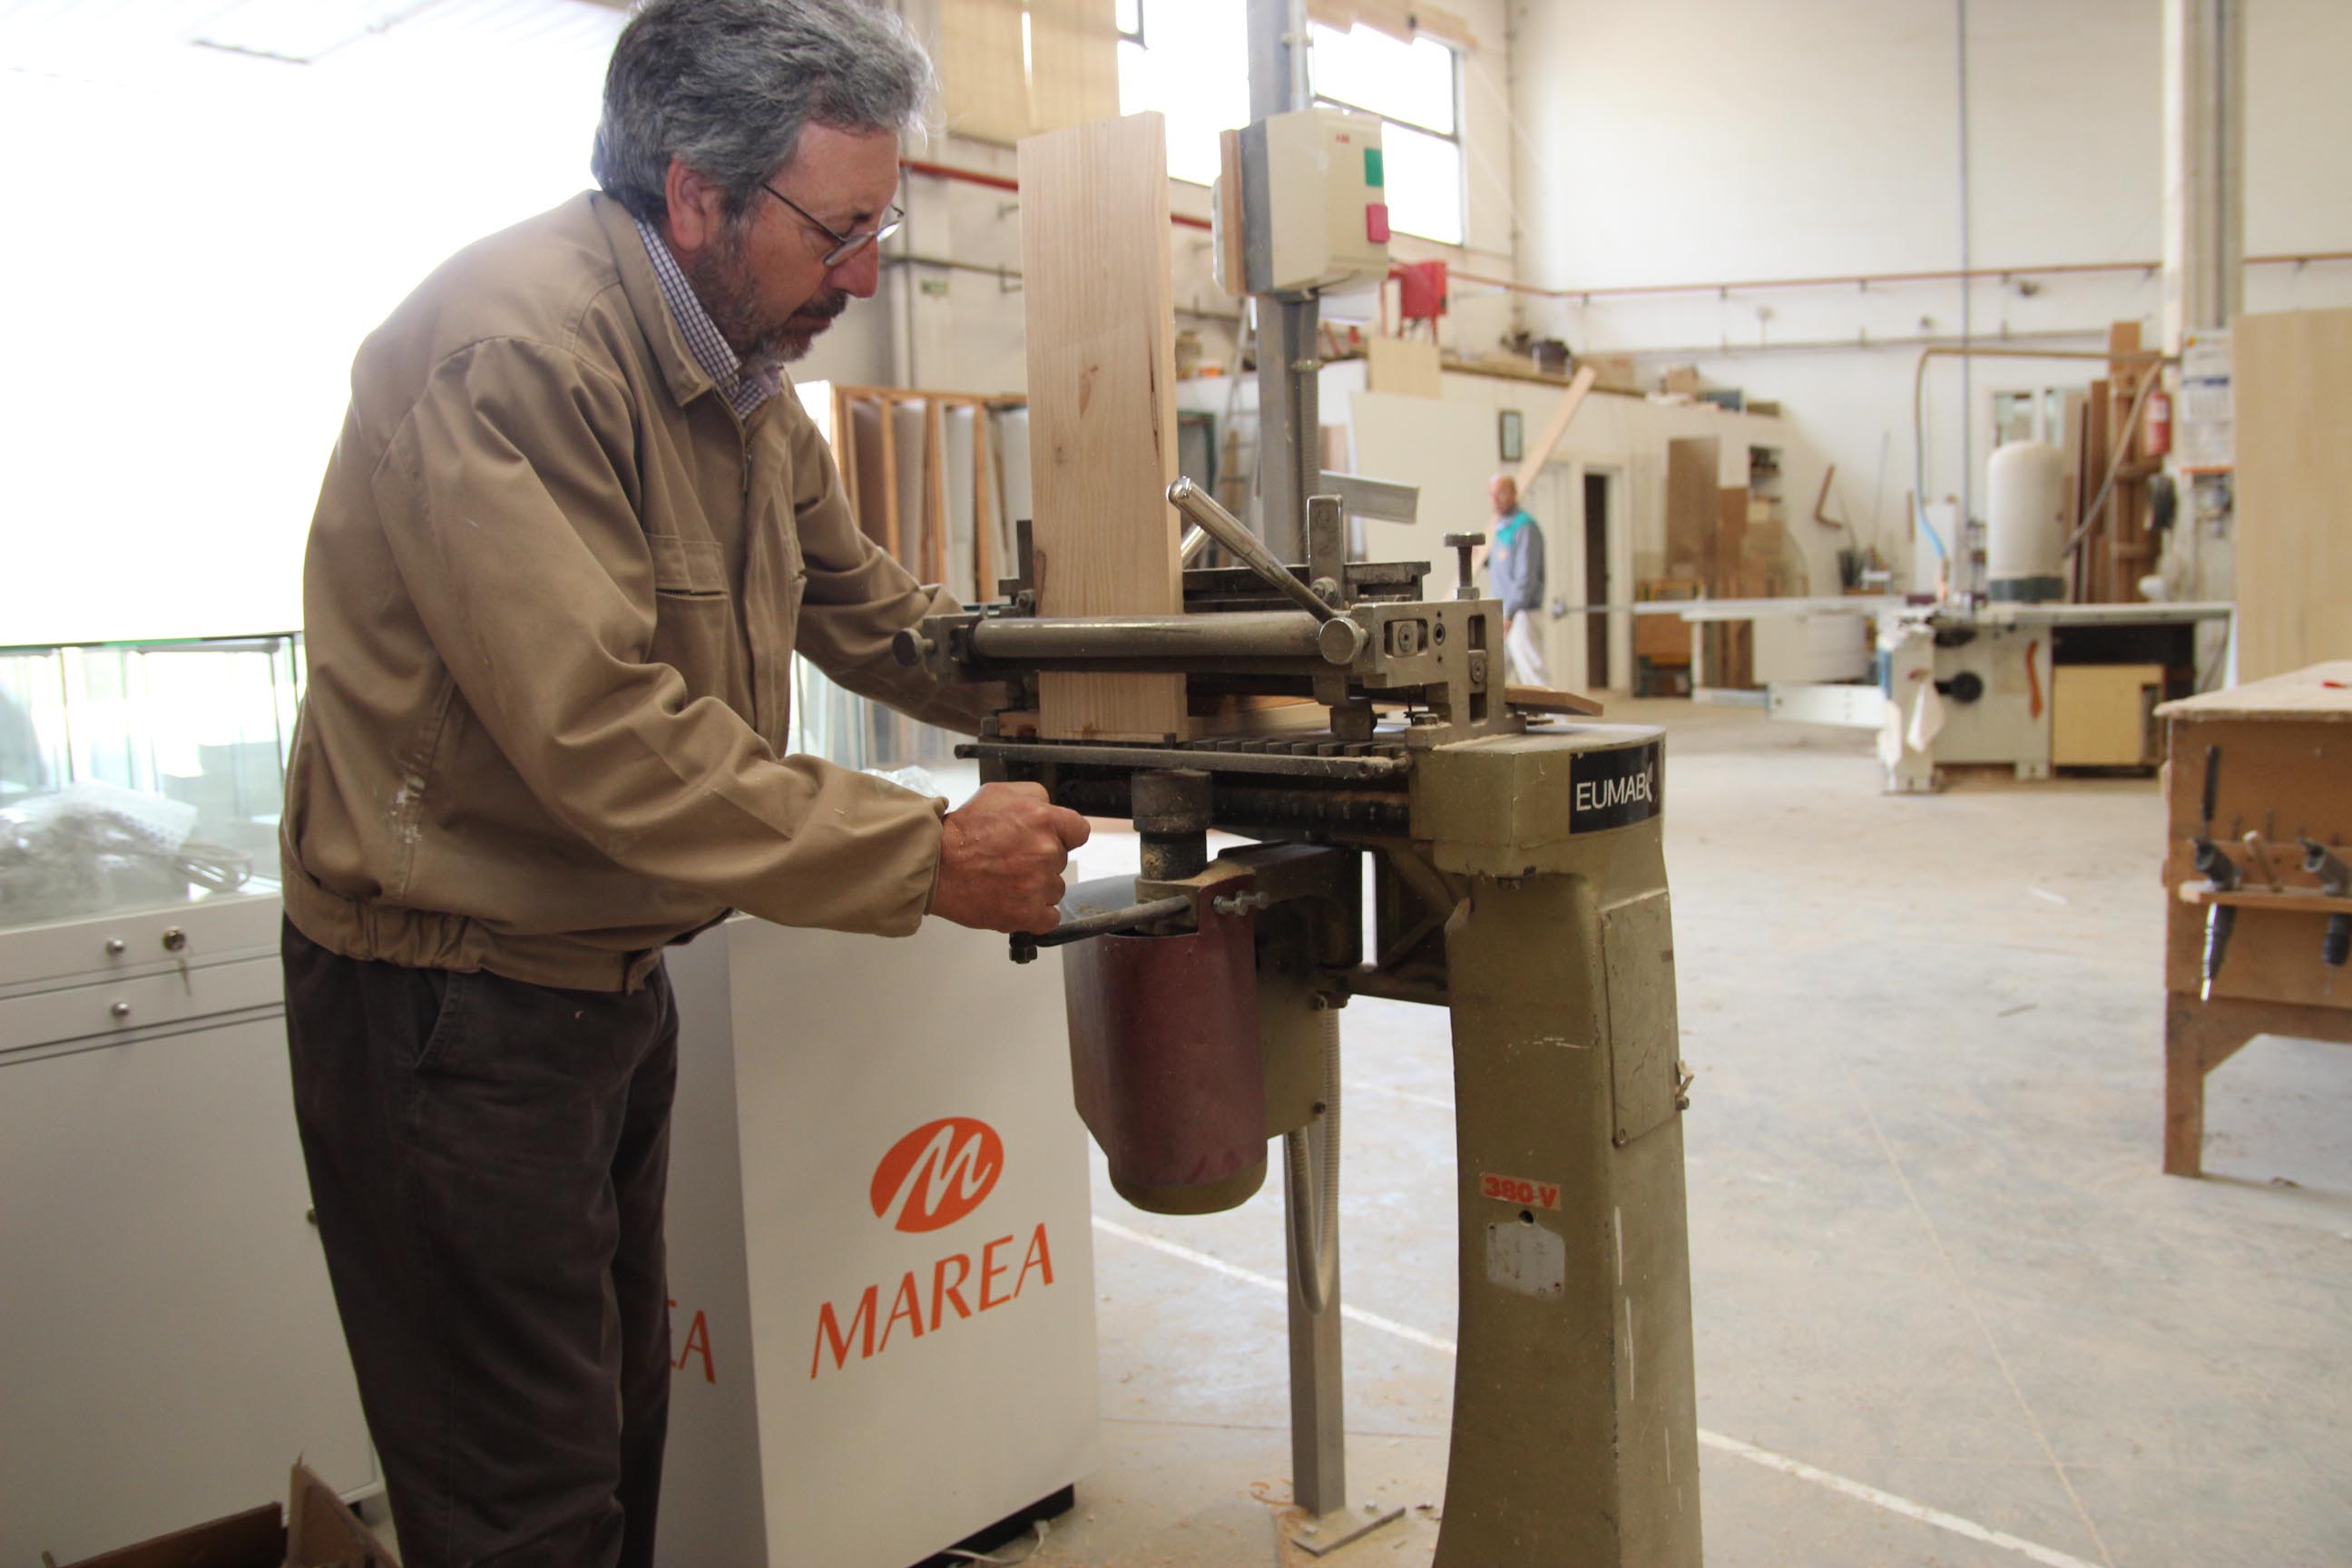 El mueble a medida de Valverde espera consolidar el mercado nacional con un trabajo de calidad y artesano